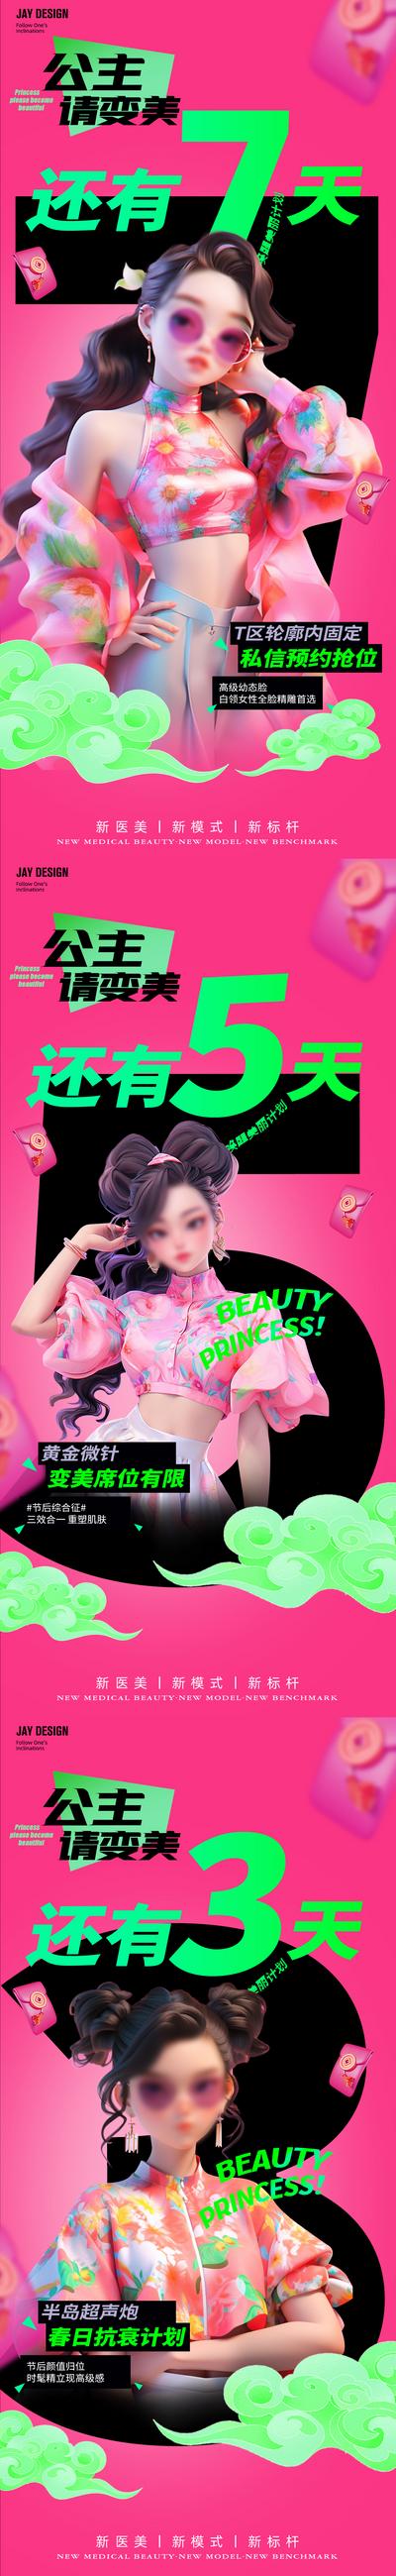 南门网 广告 医美 人物 倒计时 创意 系列 数字 轮廓 黄金微针 超声炮 AI女 春天 节后 公主 变美